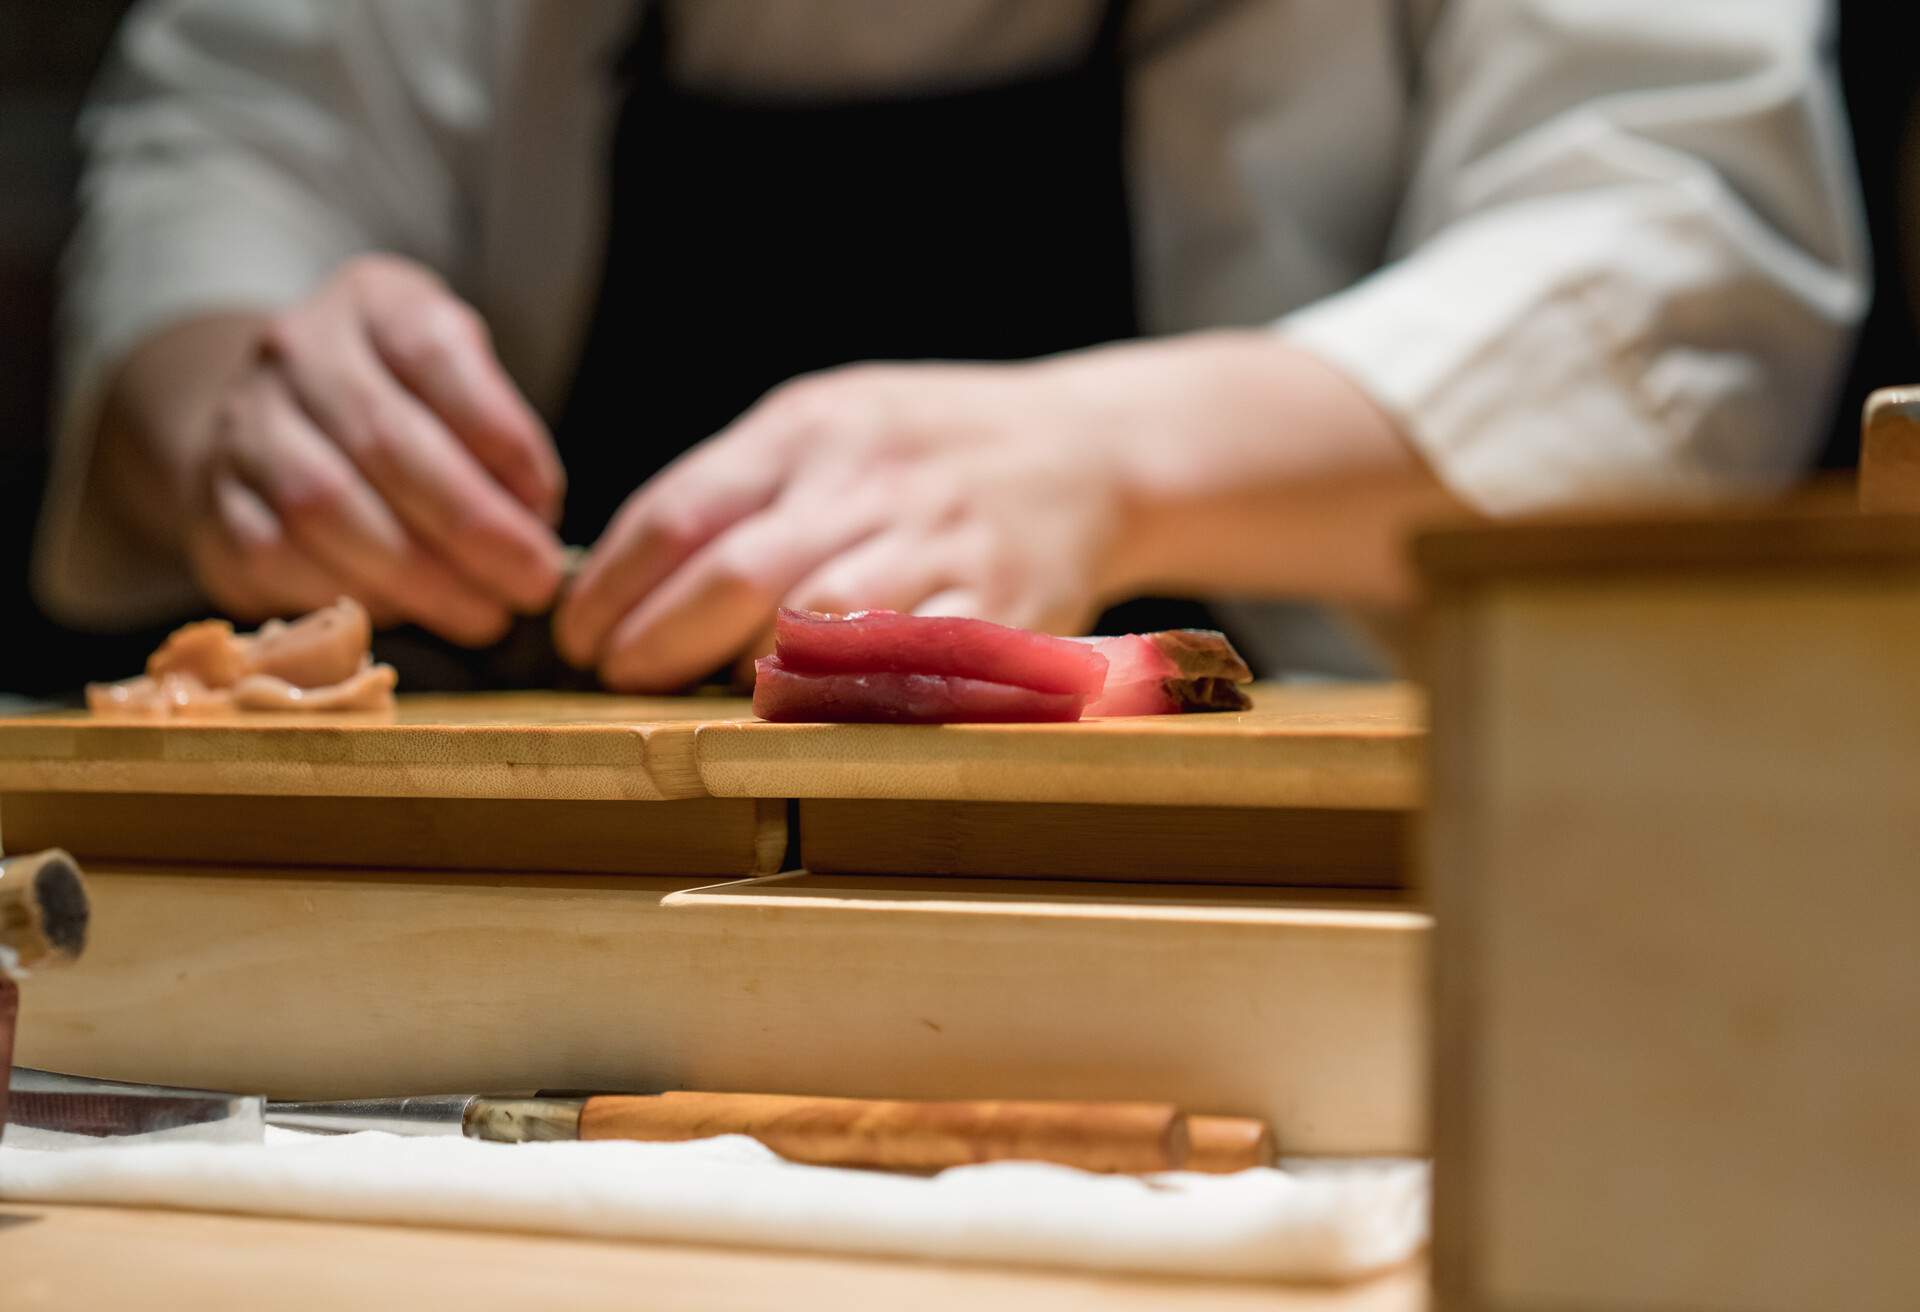 Sushi Master makes sushi at the bar